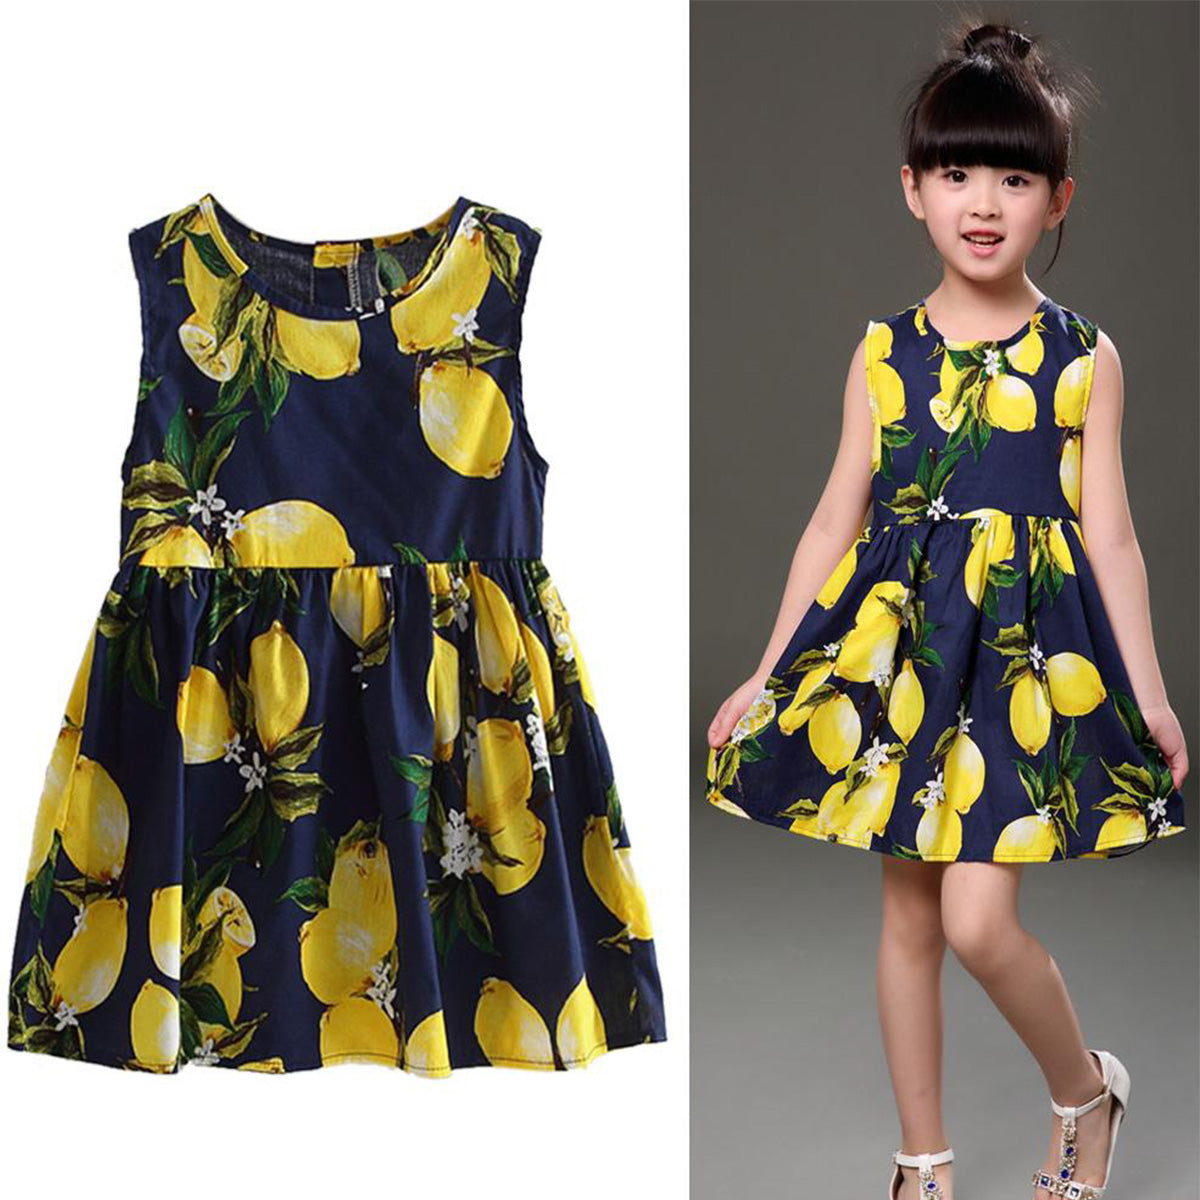 BabyGirl's Stylish Cotton Black Floral Multicolor Frocks & Dresses for Kids.